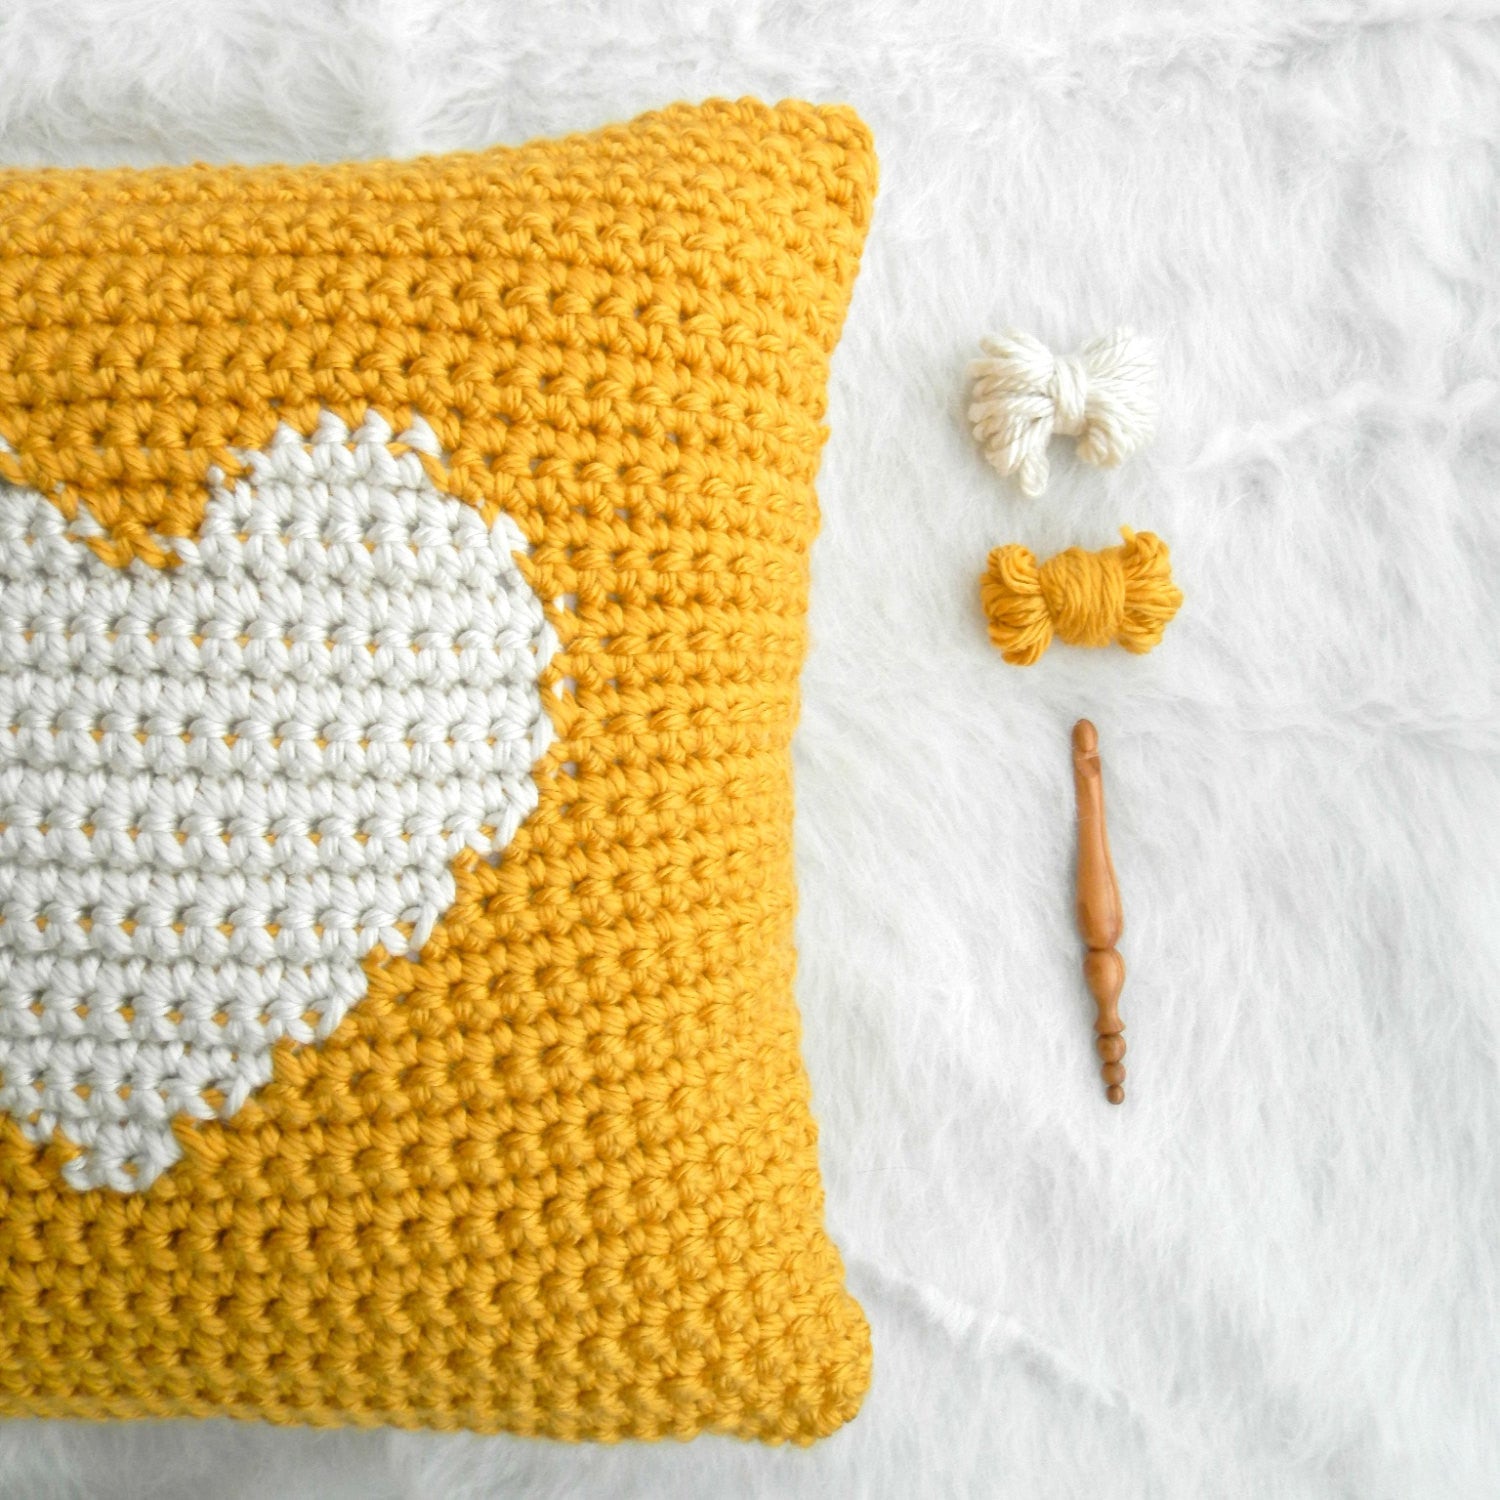 One Heart Throw Pillow // Crochet Pattern